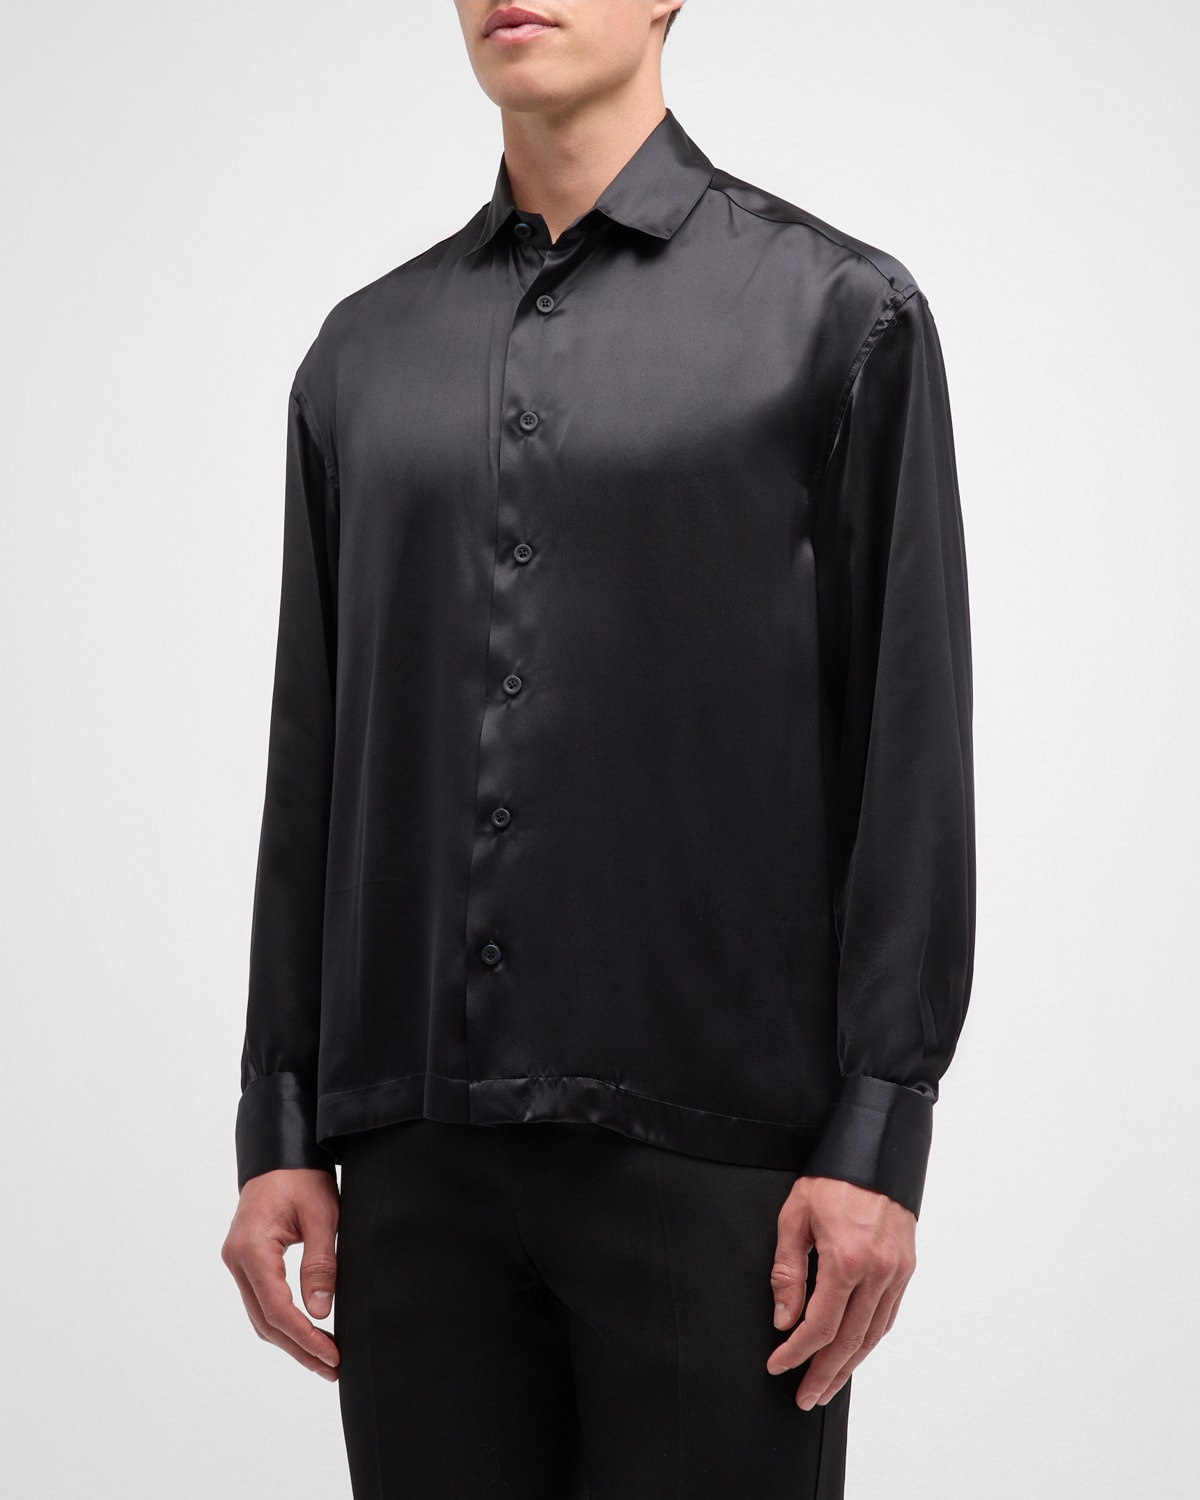 Men's Silk Dress Shirt